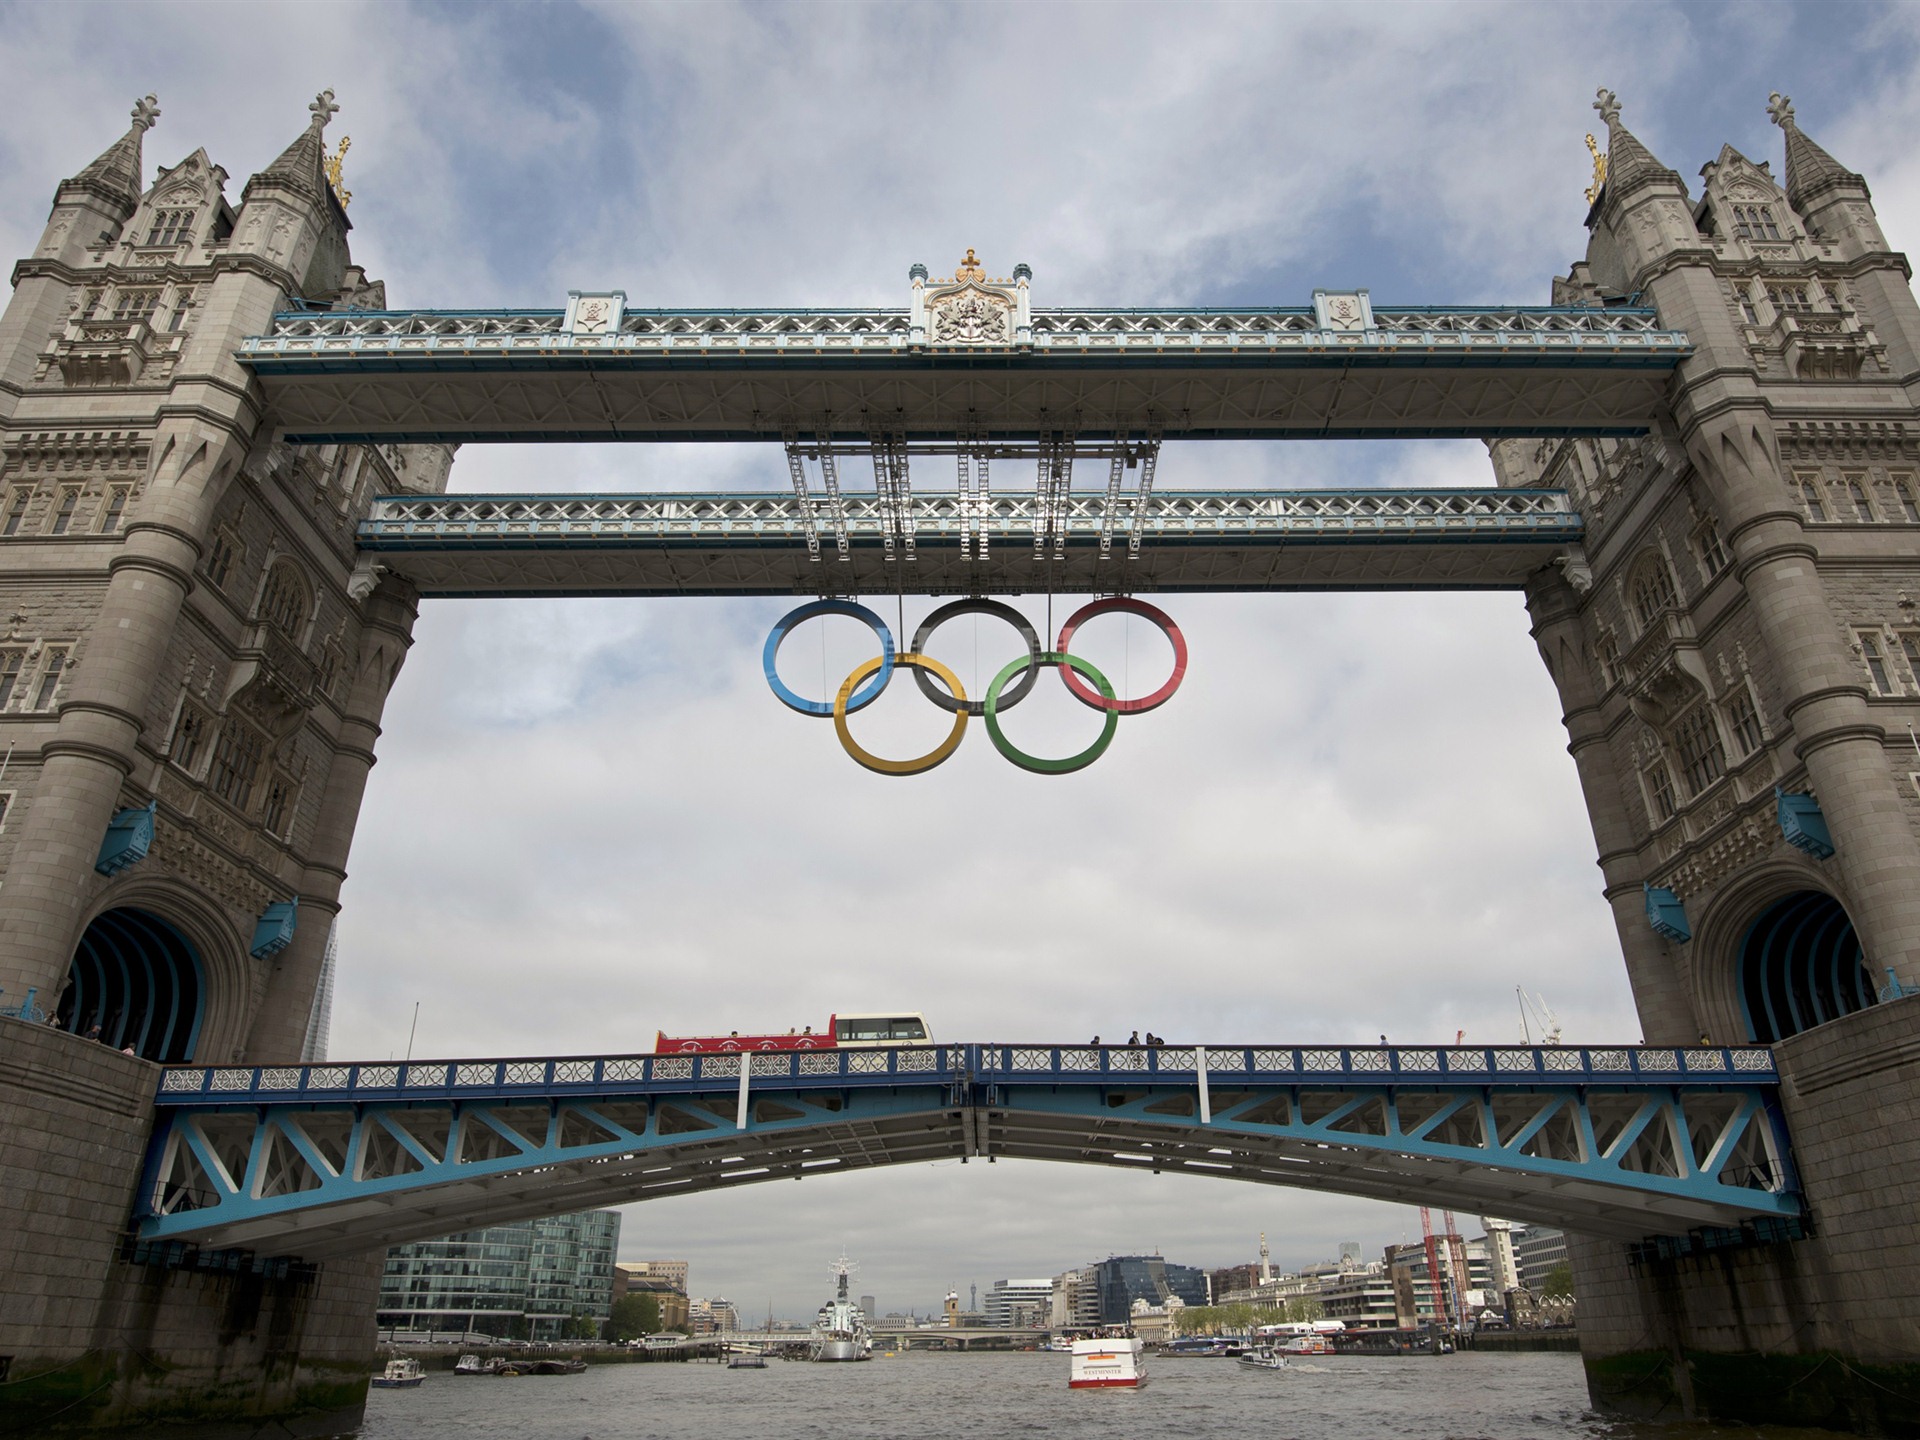 Londres 2012 Olimpiadas fondos temáticos (1) #27 - 1920x1440